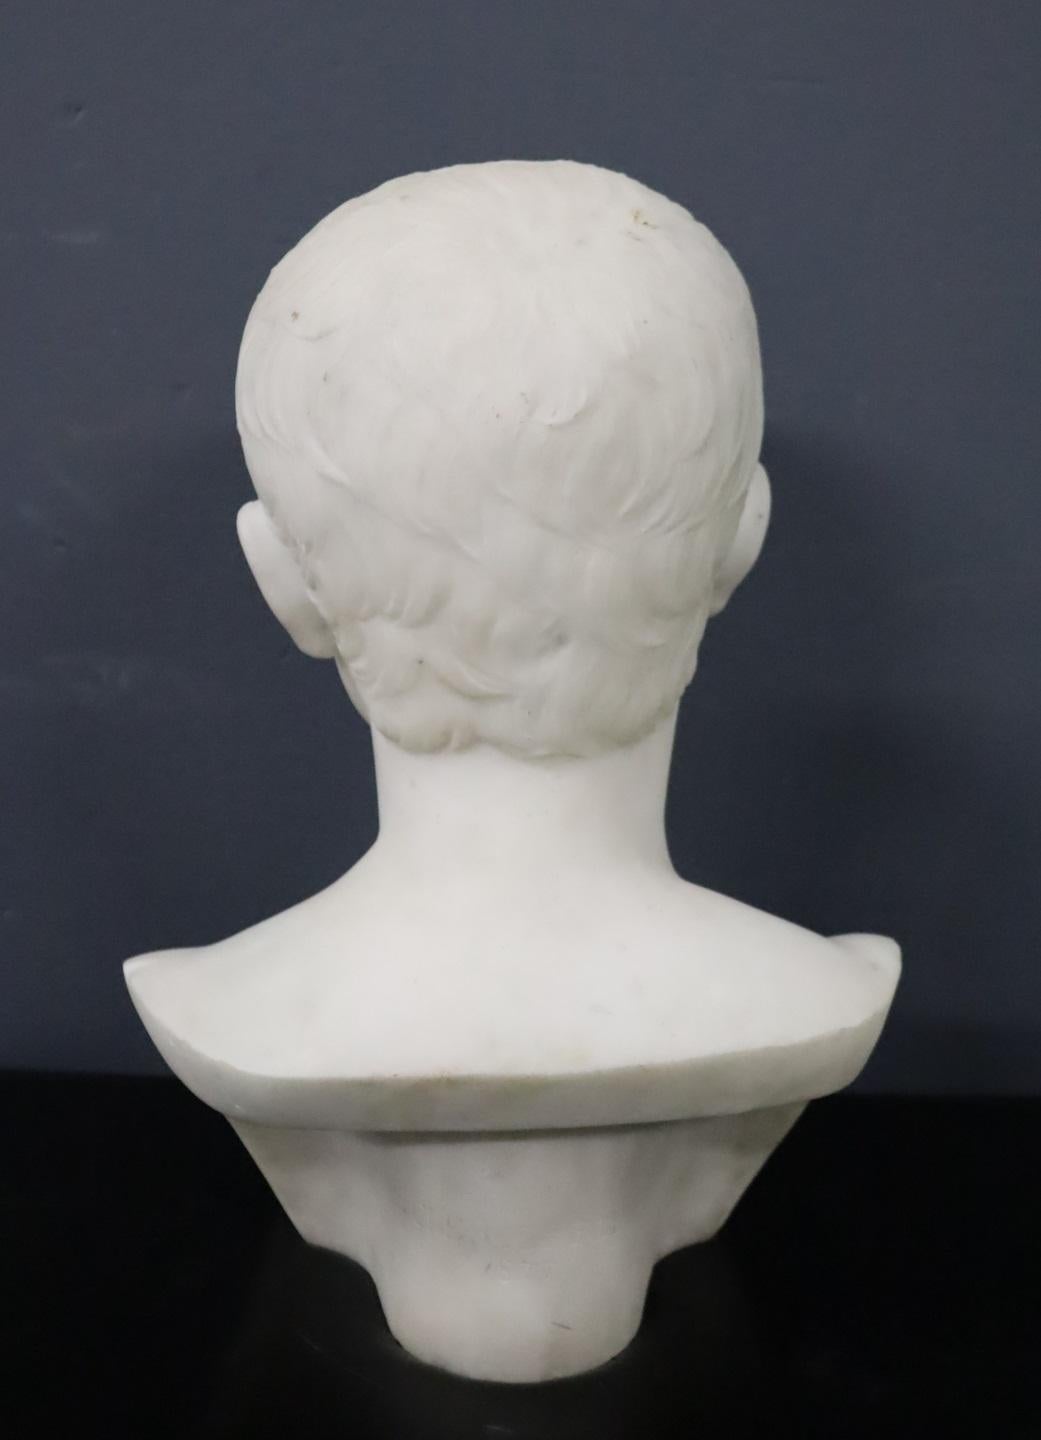 Buste en marbre italien du XIXe siècle représentant le jeune empereur Octave. La sculpture, taillée dans du marbre blanc de Carrare, est un exemple exquis d'œuvre néoclassique et présente une patine fascinante.